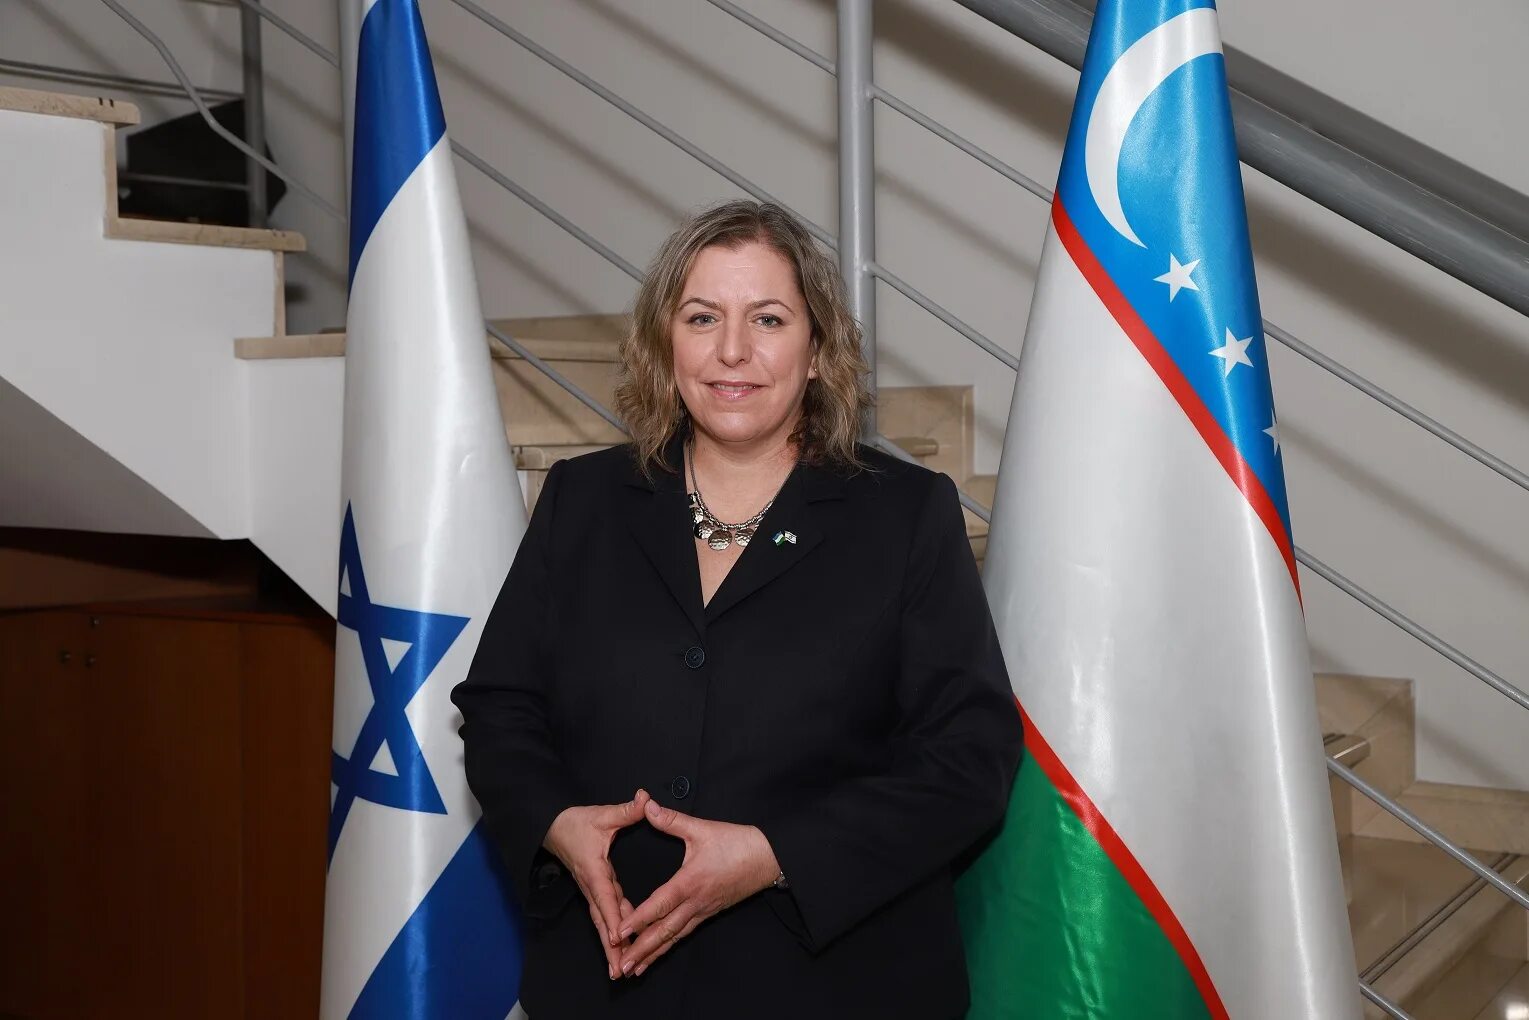 Зехавит Бен-Хиллель. Посол Узбекистана в Израиле. Дорис посол Израиля.